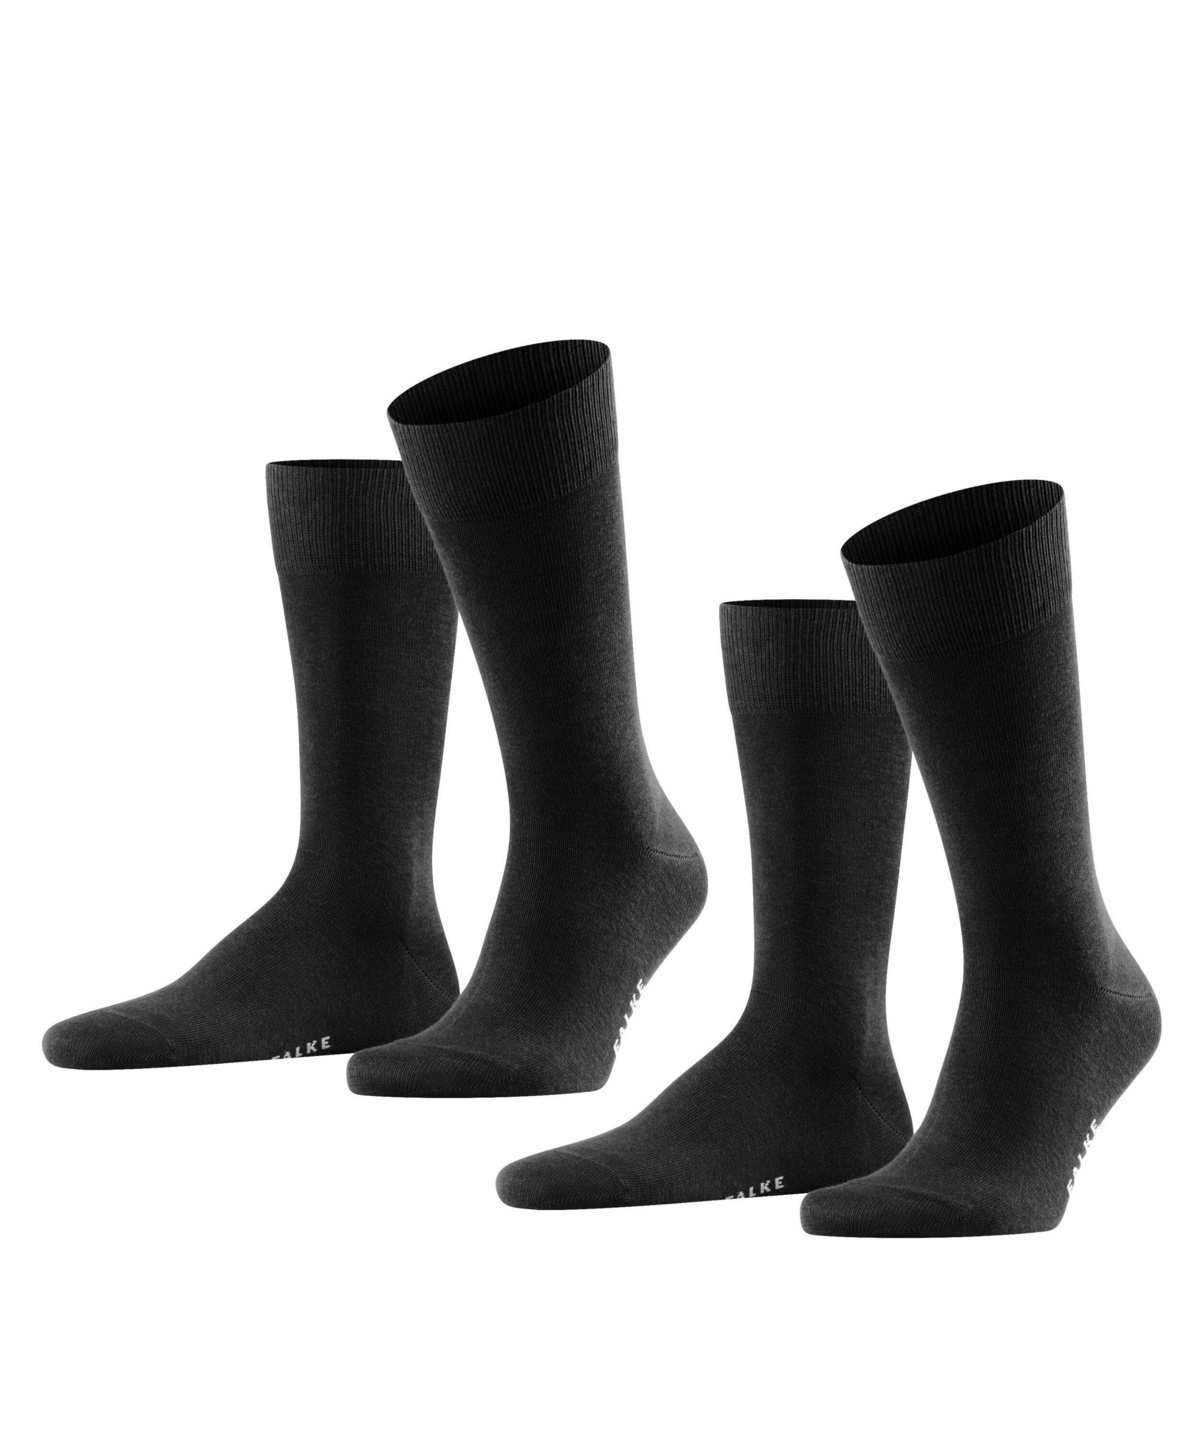 FALKE Socken Happy 2-Pack Baumwolle Herren schwarz grau viele weitere Farben verstärkte Herrensocken ohne Muster atmungsaktiv dünn und einfarbig im Multipack 2 Paar